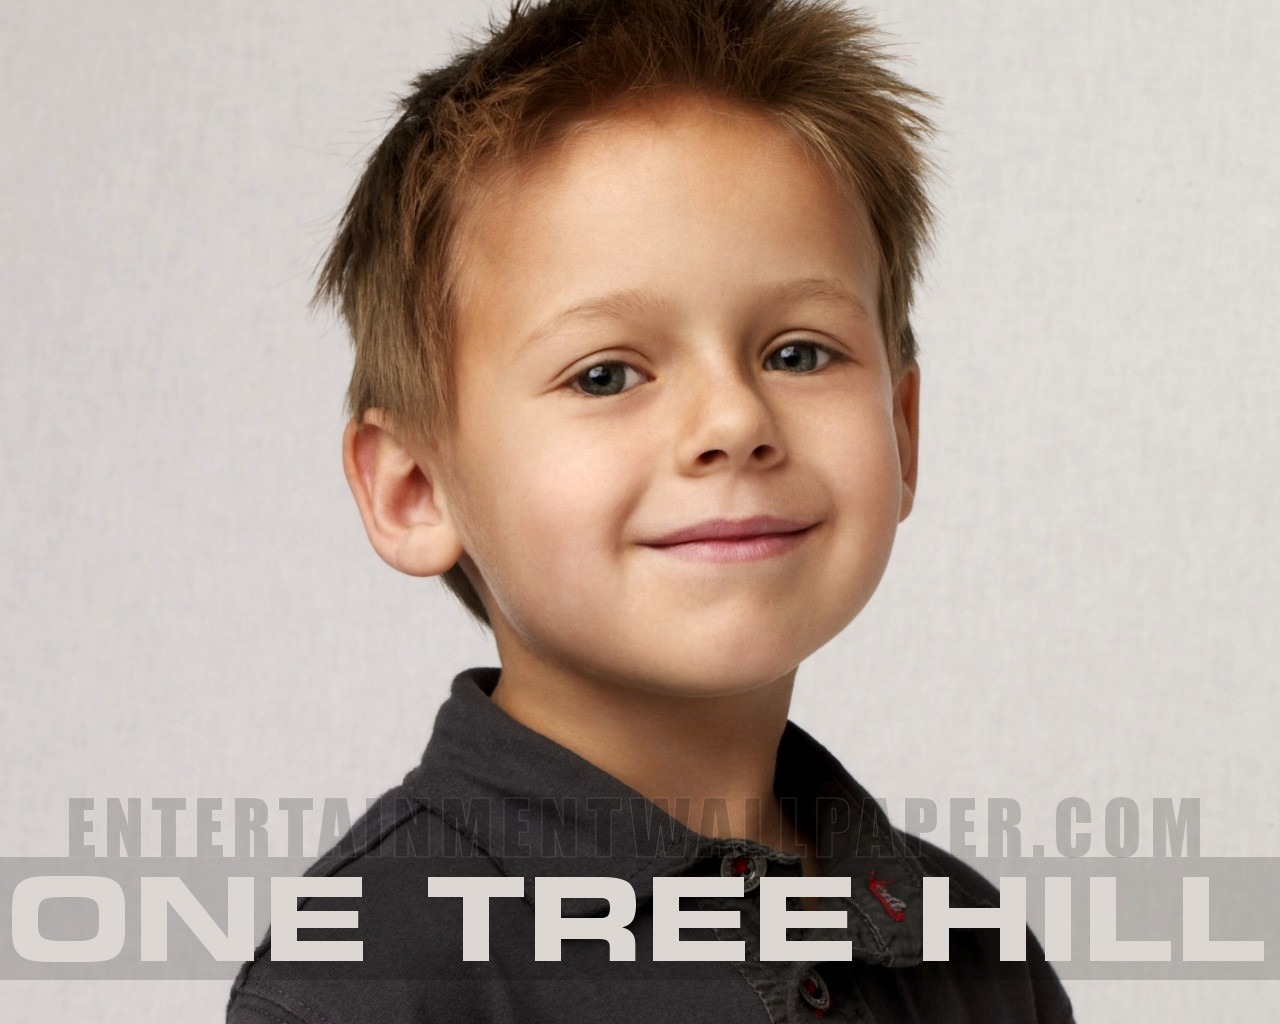 One Tree Hill 籃球兄弟 #8 - 1280x1024